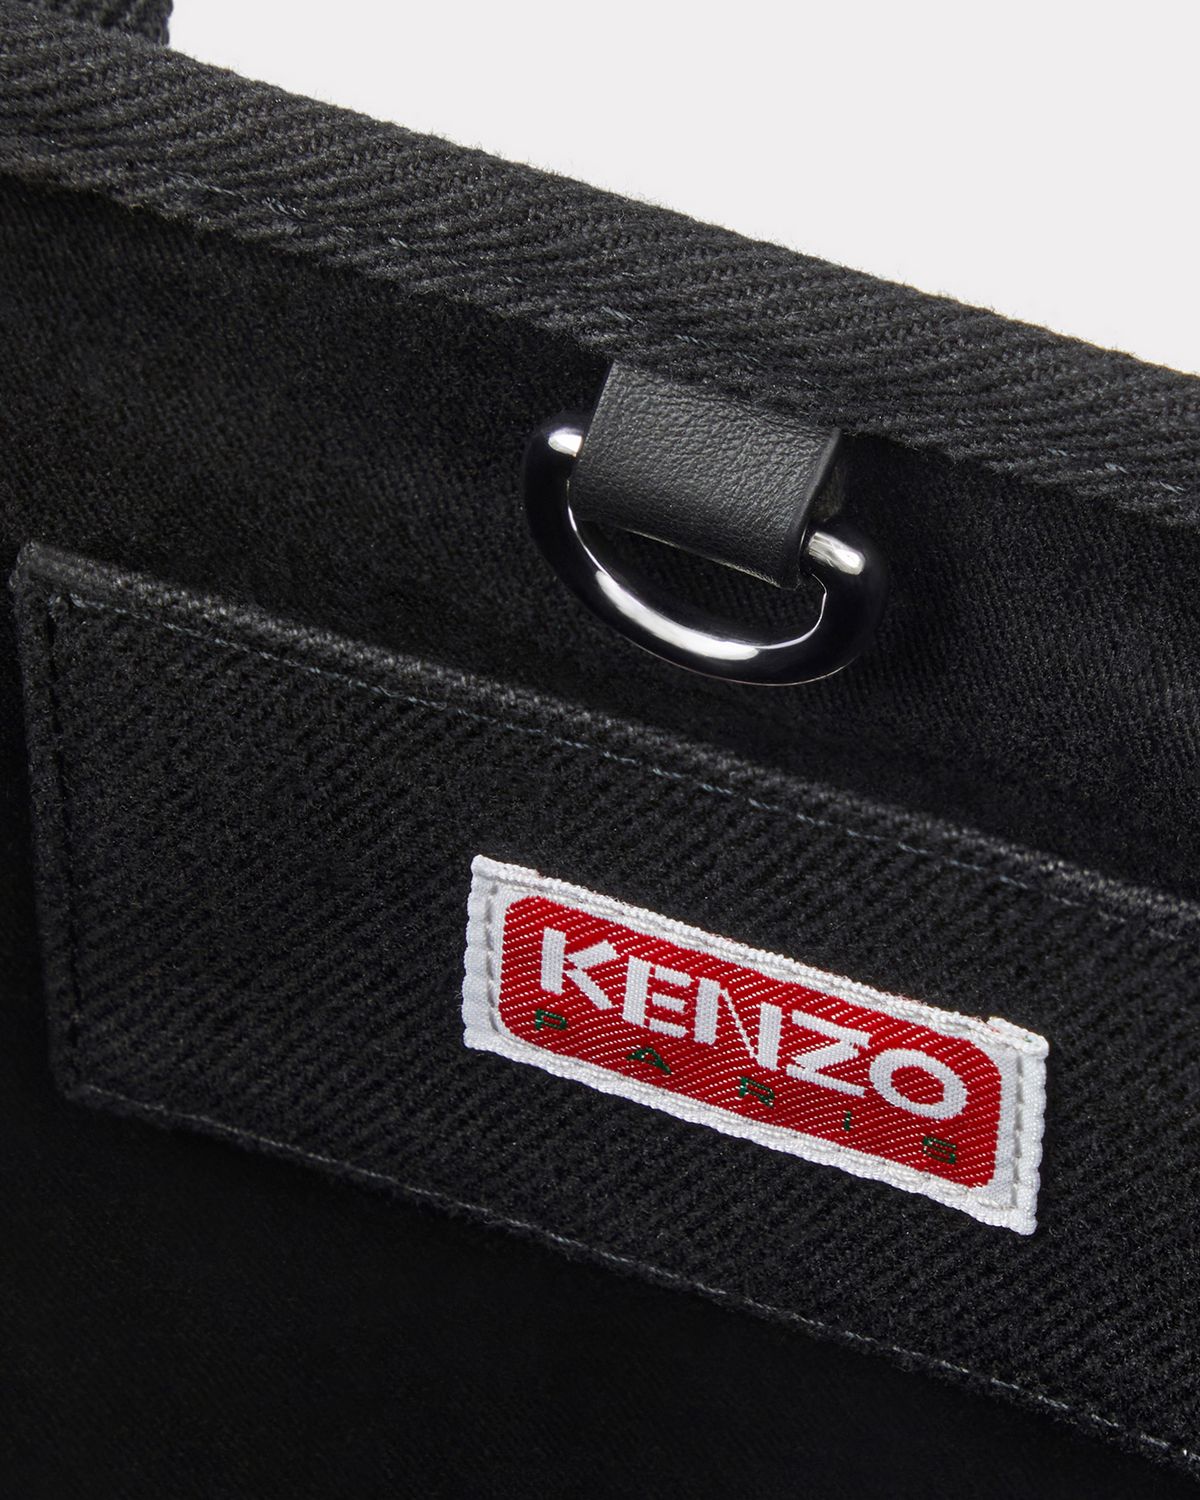 KENZO - 【ラスト1点】【限定】 KENZO x VERDY / SMALL TOTE BAG